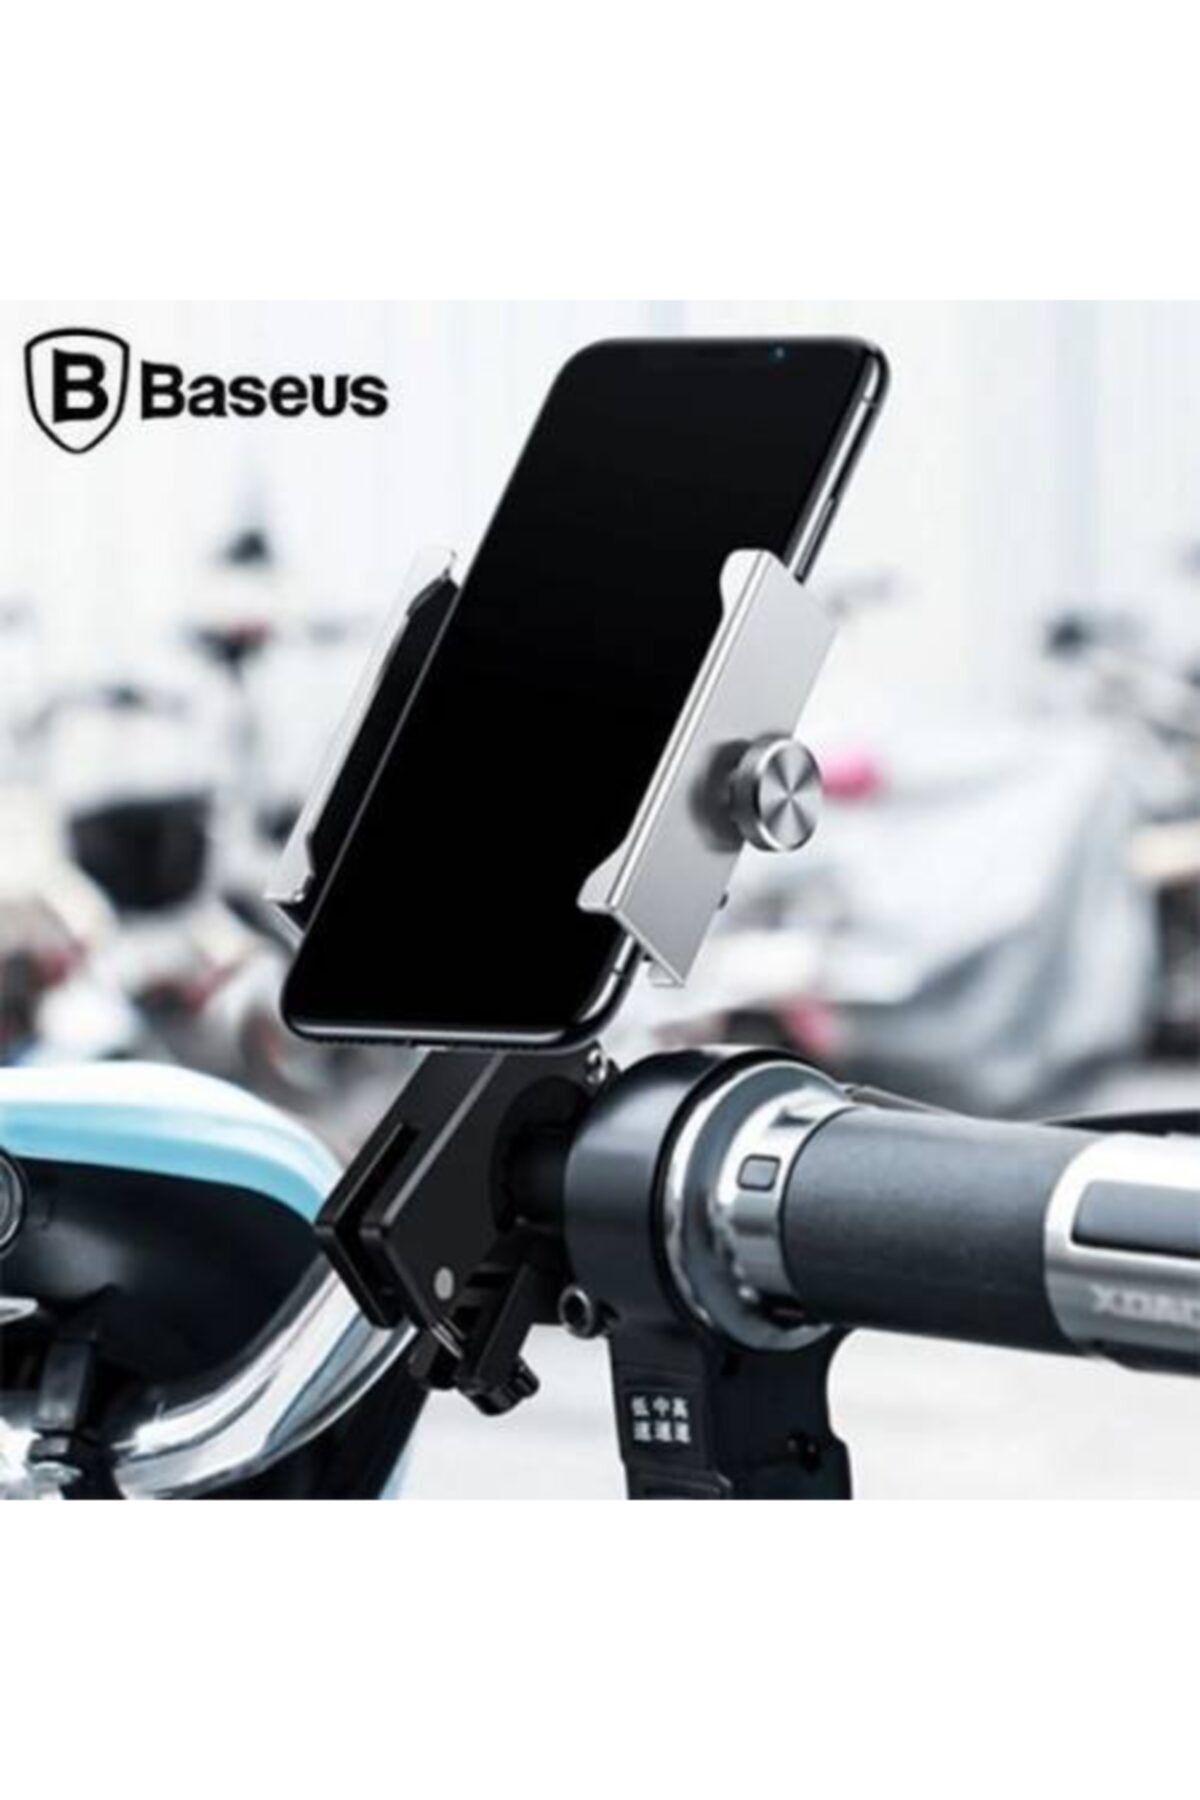 Baseus Vidalı Zırhlı Bisiklet Motosiklet Telefon Tutucu Sarsılmaz Gidon Tutucu Motosiklet Tutucu